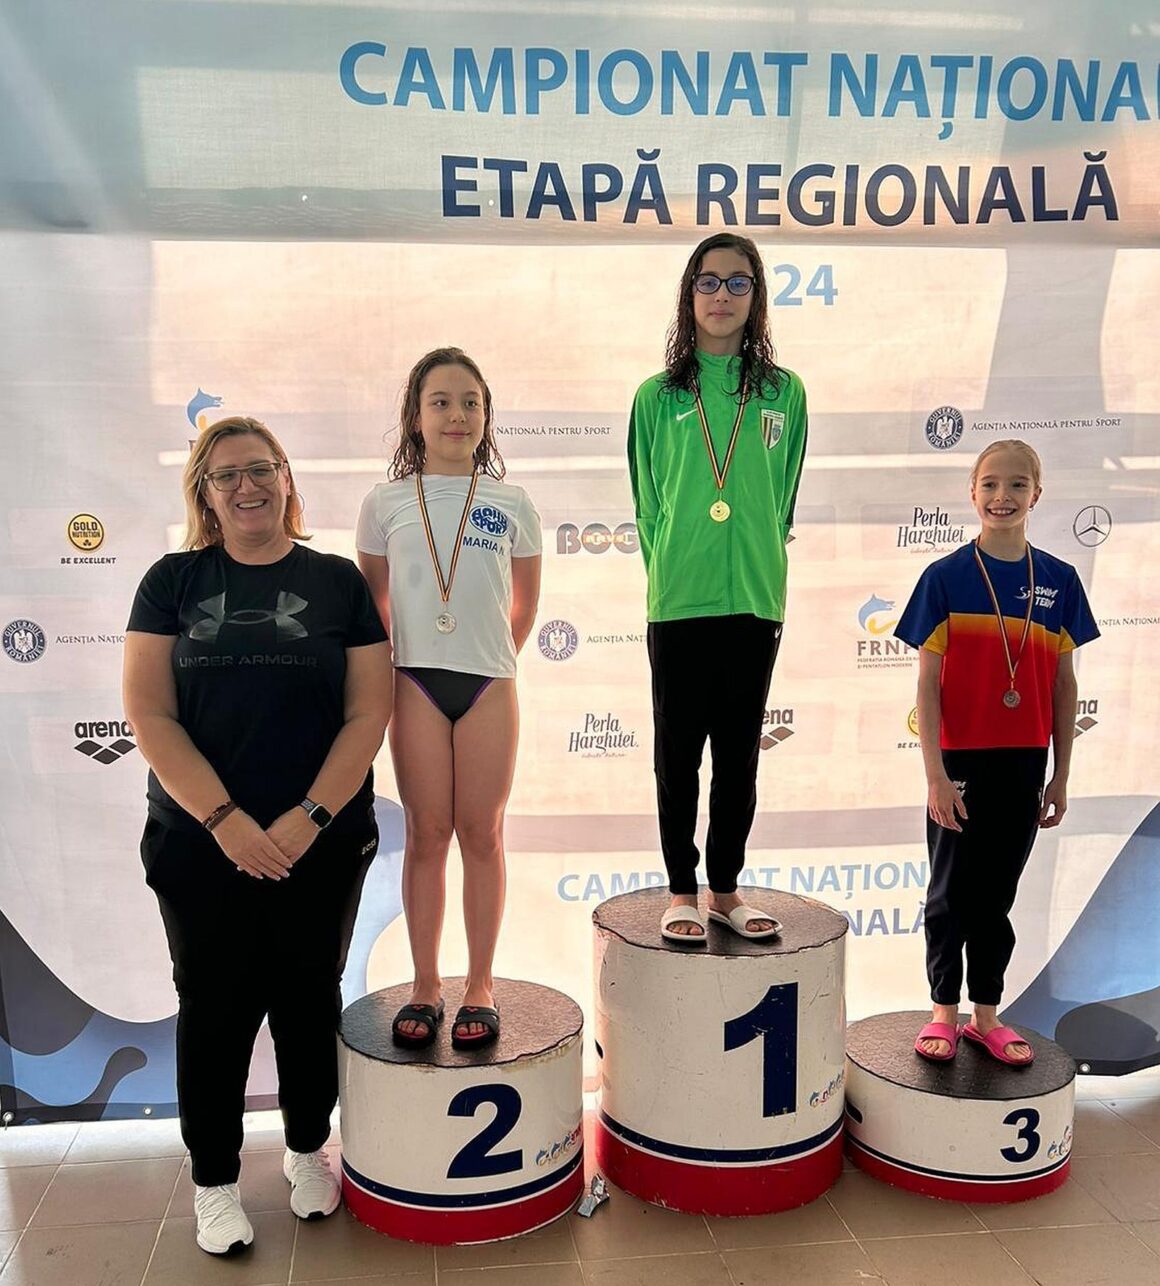 Nataţie: Alexandra Dosaru, 3 medalii la Etapa Regională a Campionatelor Naţionale „10-11 ani”!